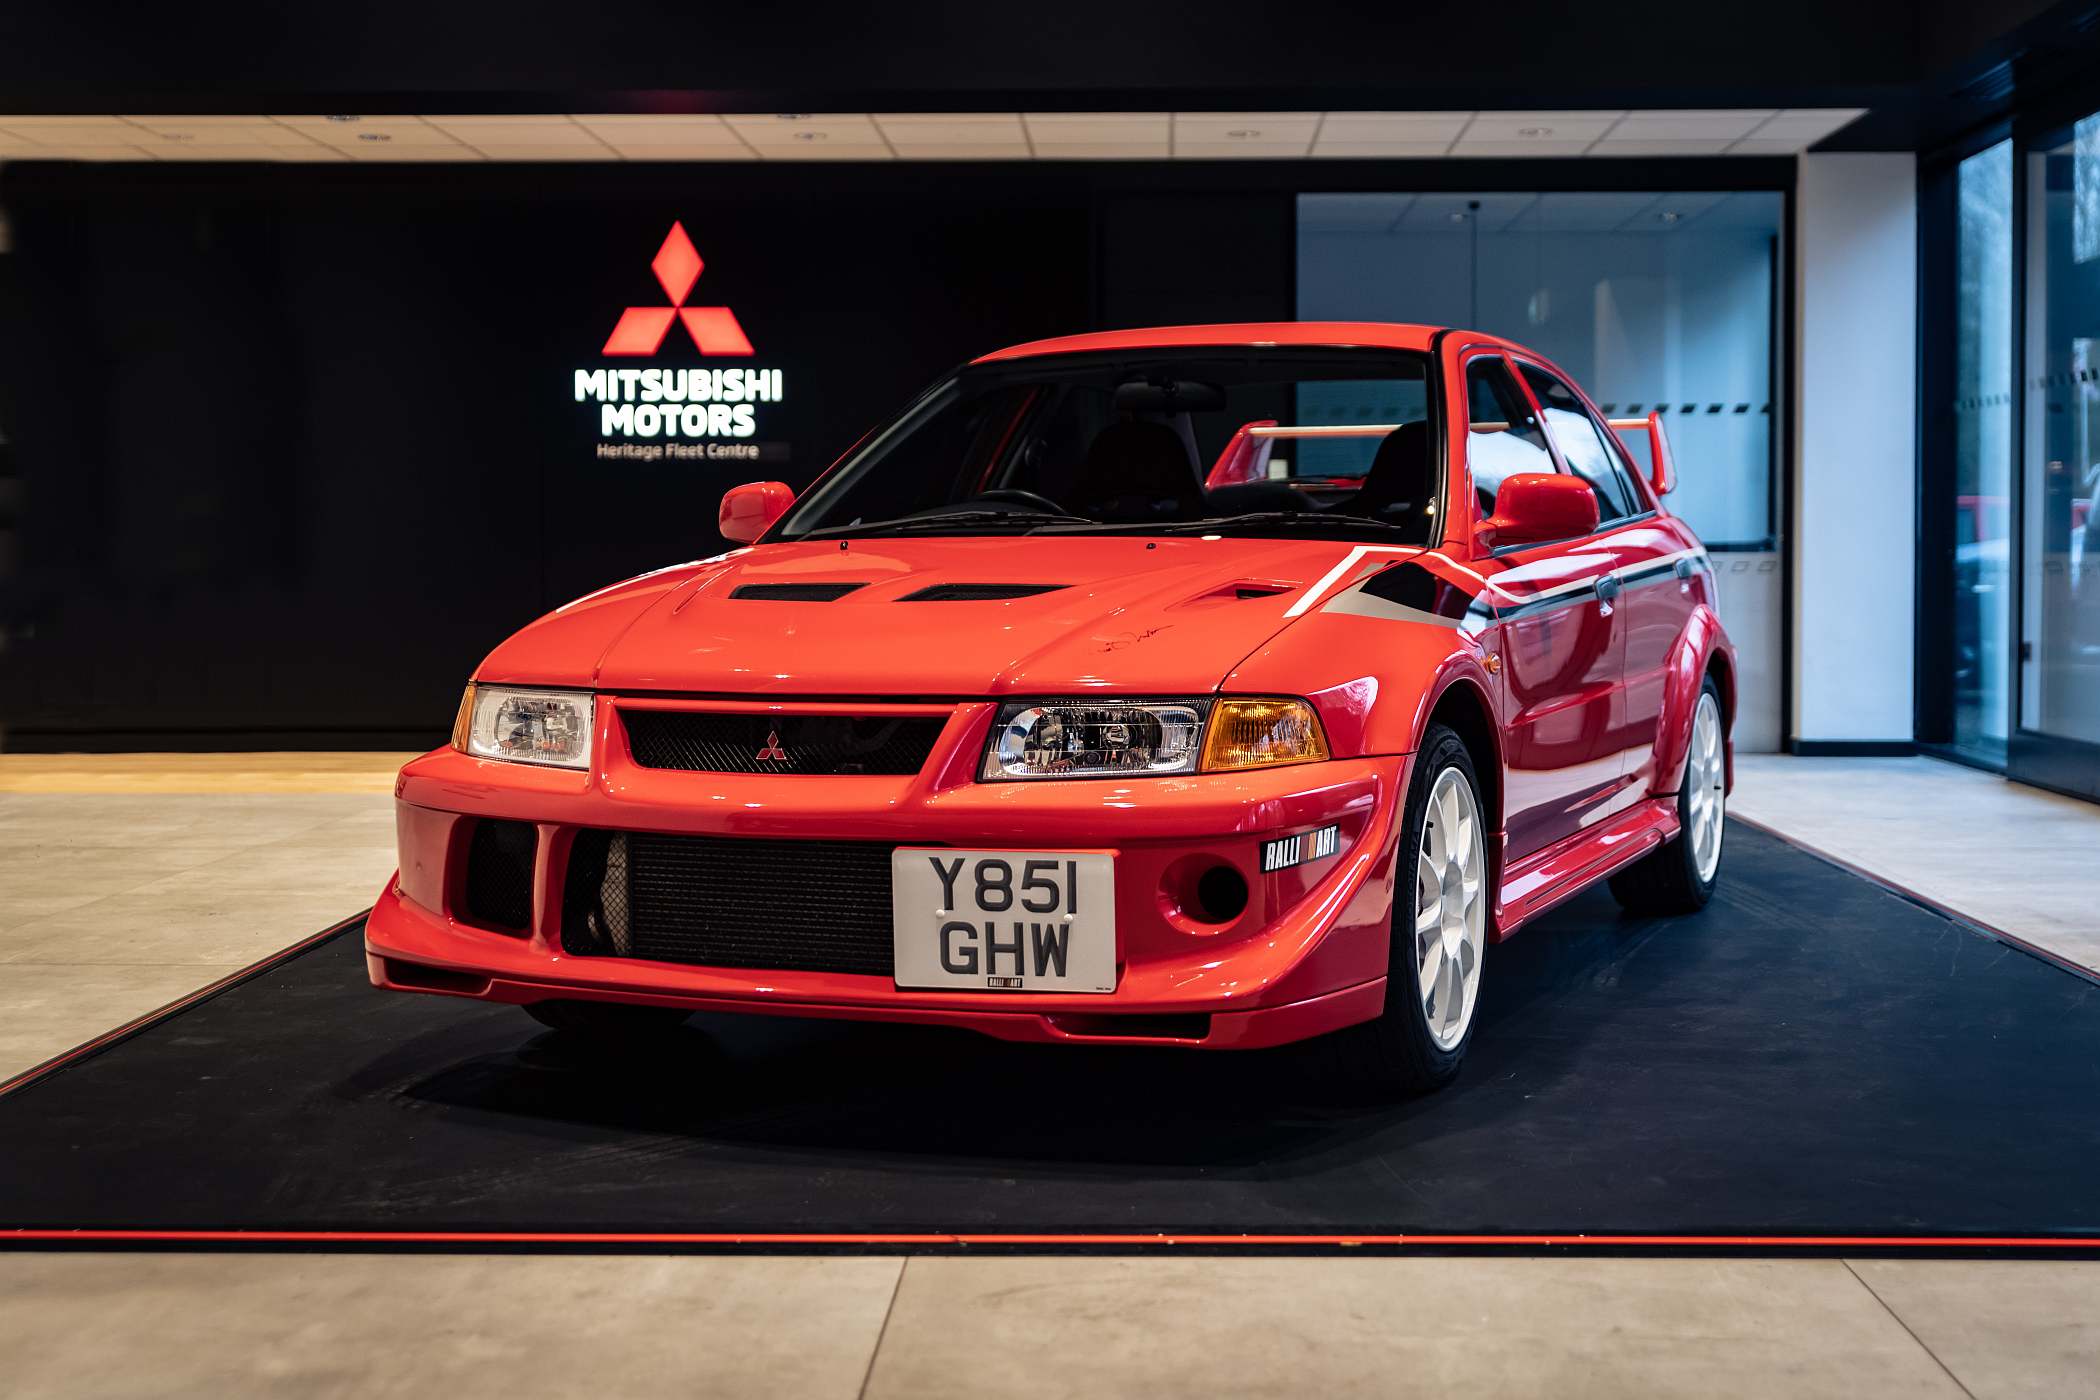 2000 Mitsubishi Lancer Evolution VI Tommi Makinen Edition